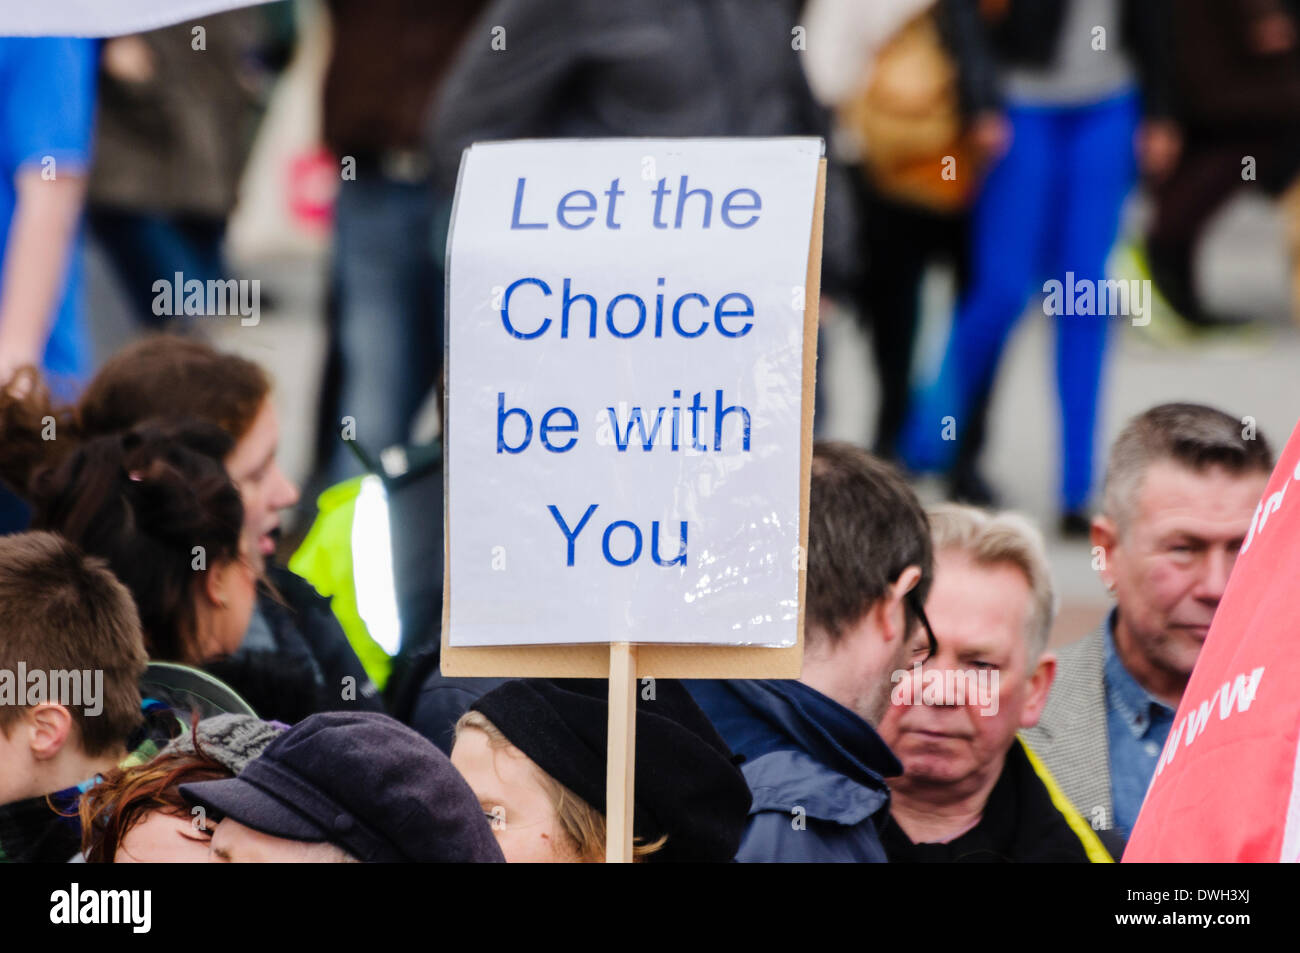 Belfast, Irlanda del Norte. 8 Mar 2014 - Se celebra un cartel diciendo "Dejemos que la elección sea con vosotros" desde una pro-elección defensora del aborto. Crédito: Stephen Barnes/Alamy Live News Foto de stock